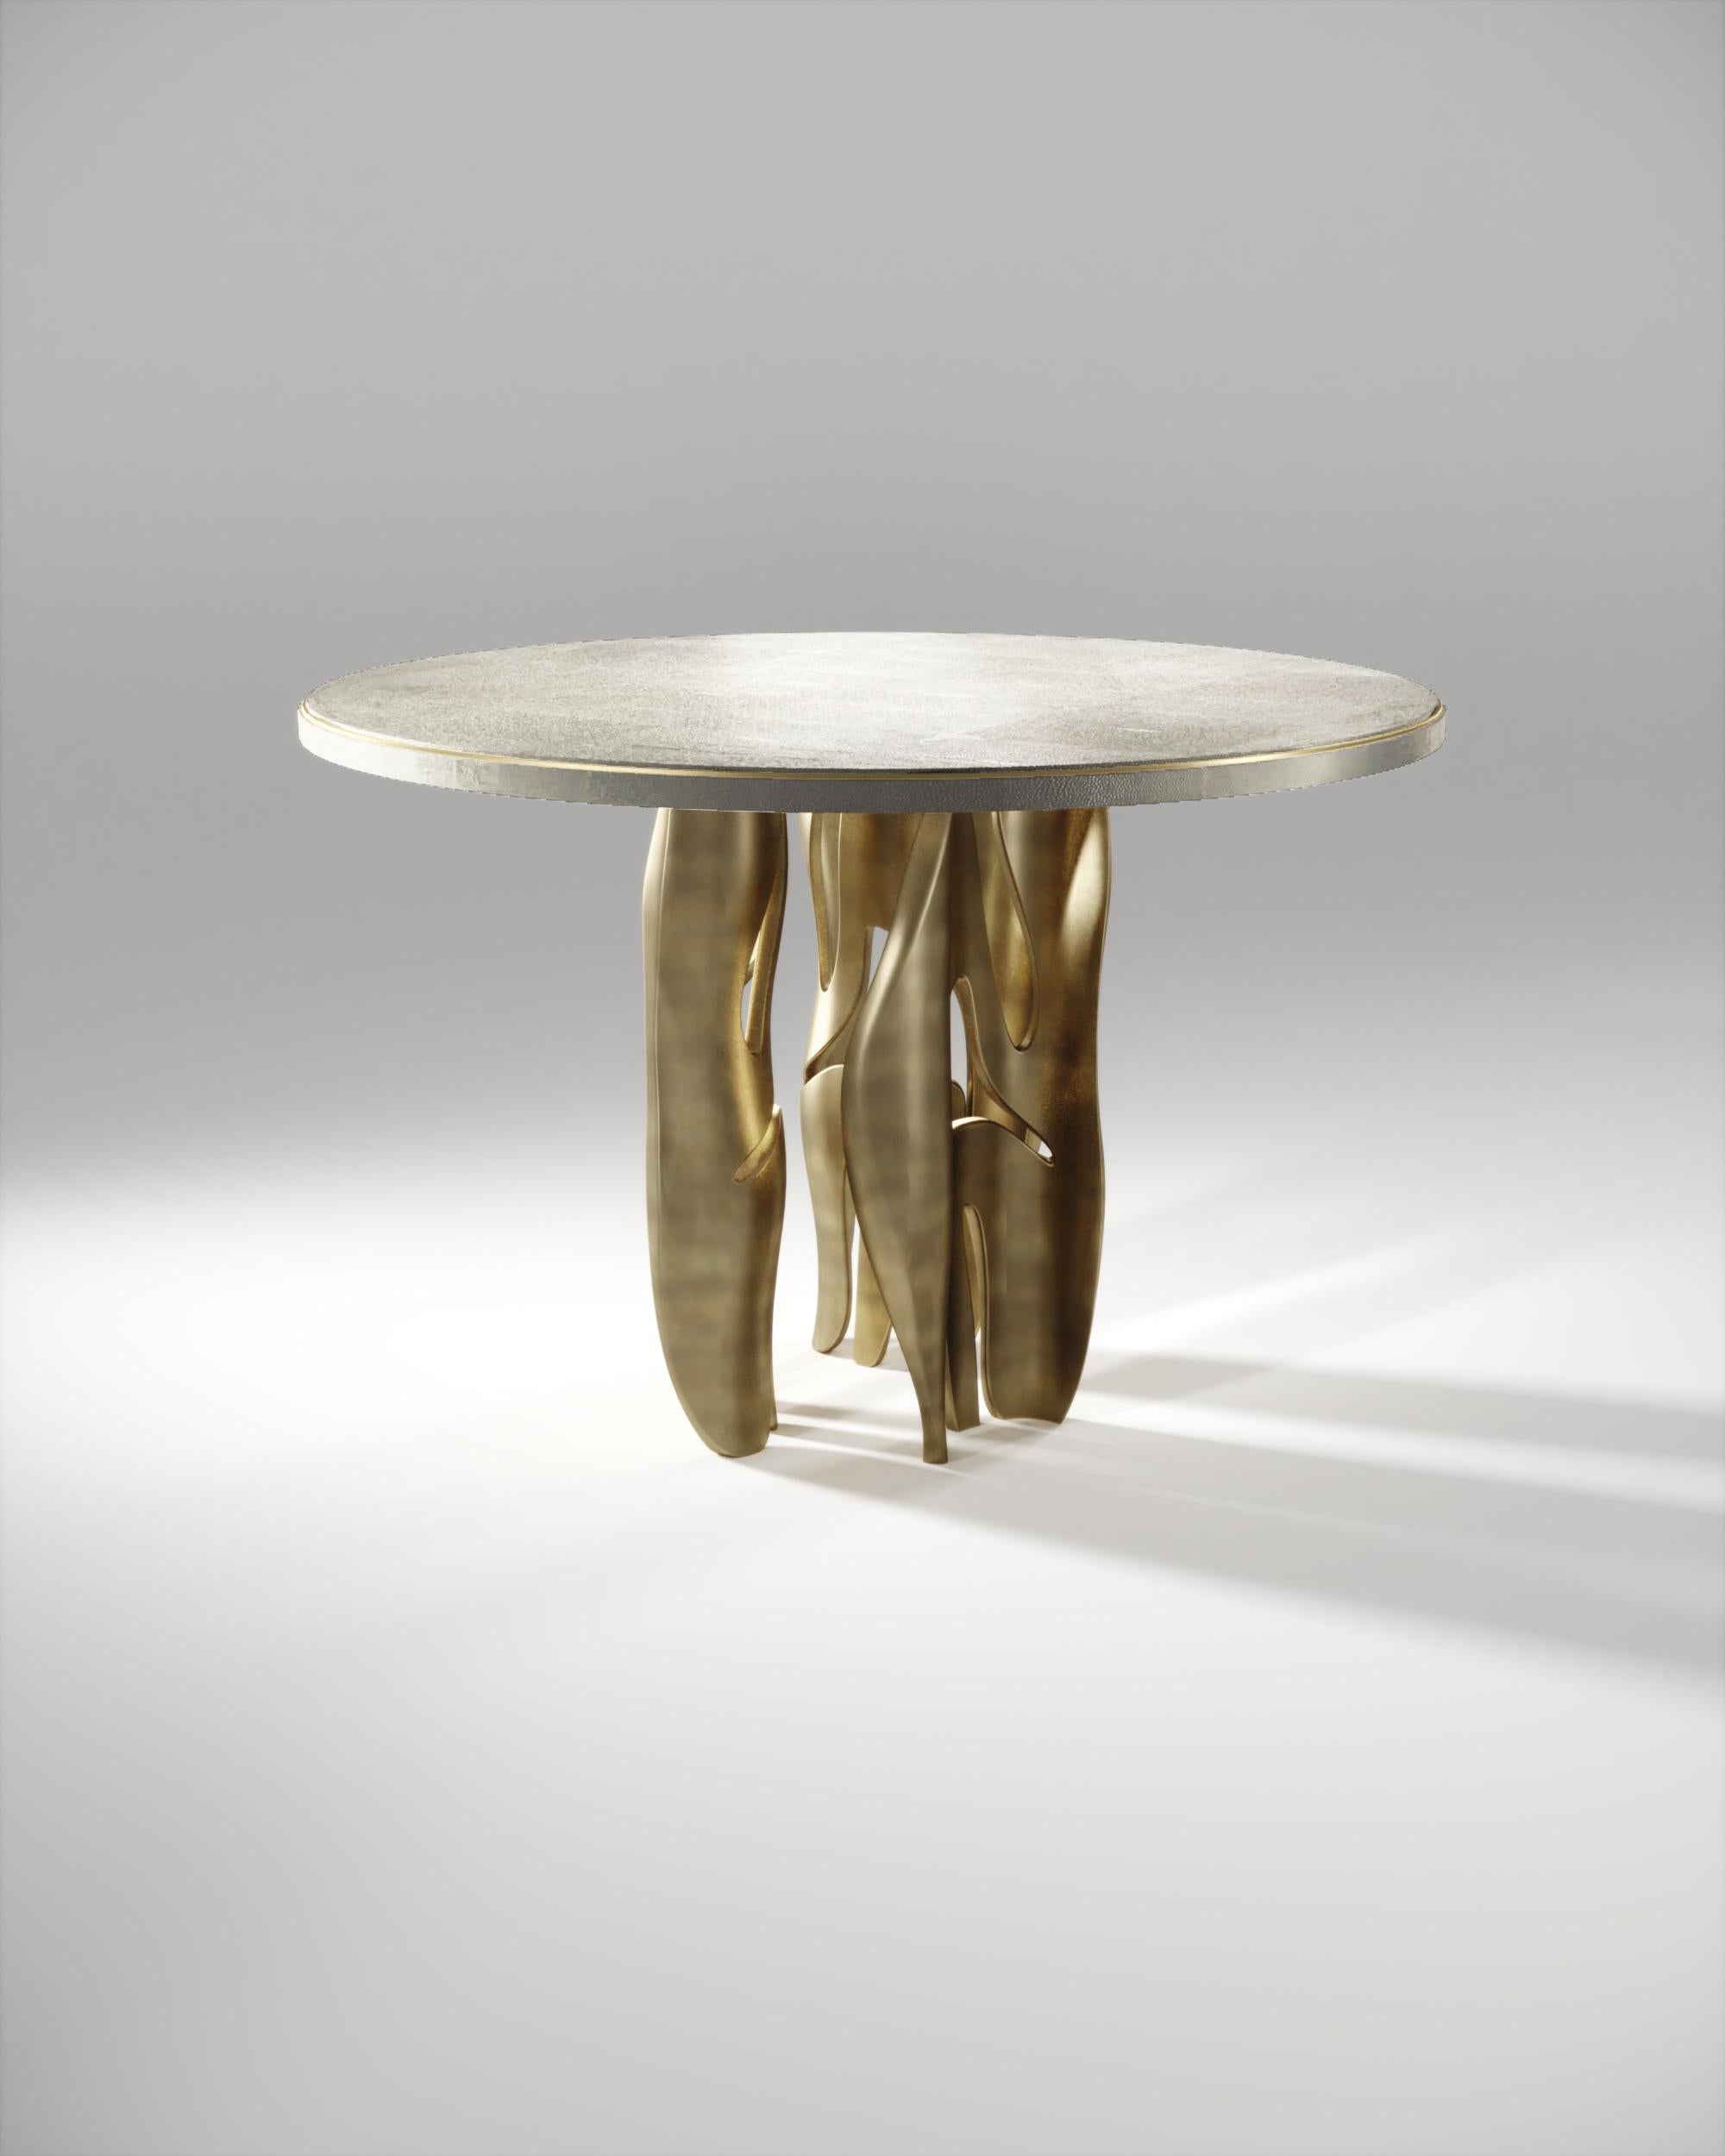 La table de petit-déjeuner Metropolis II de R&Y Augousti est une pièce maîtresse. Le plateau rond incrusté de galuchat crème, avec une indentation discrète en métal, repose sur un groupe de pieds sculpturaux spectaculaires en laiton bronze-patina,